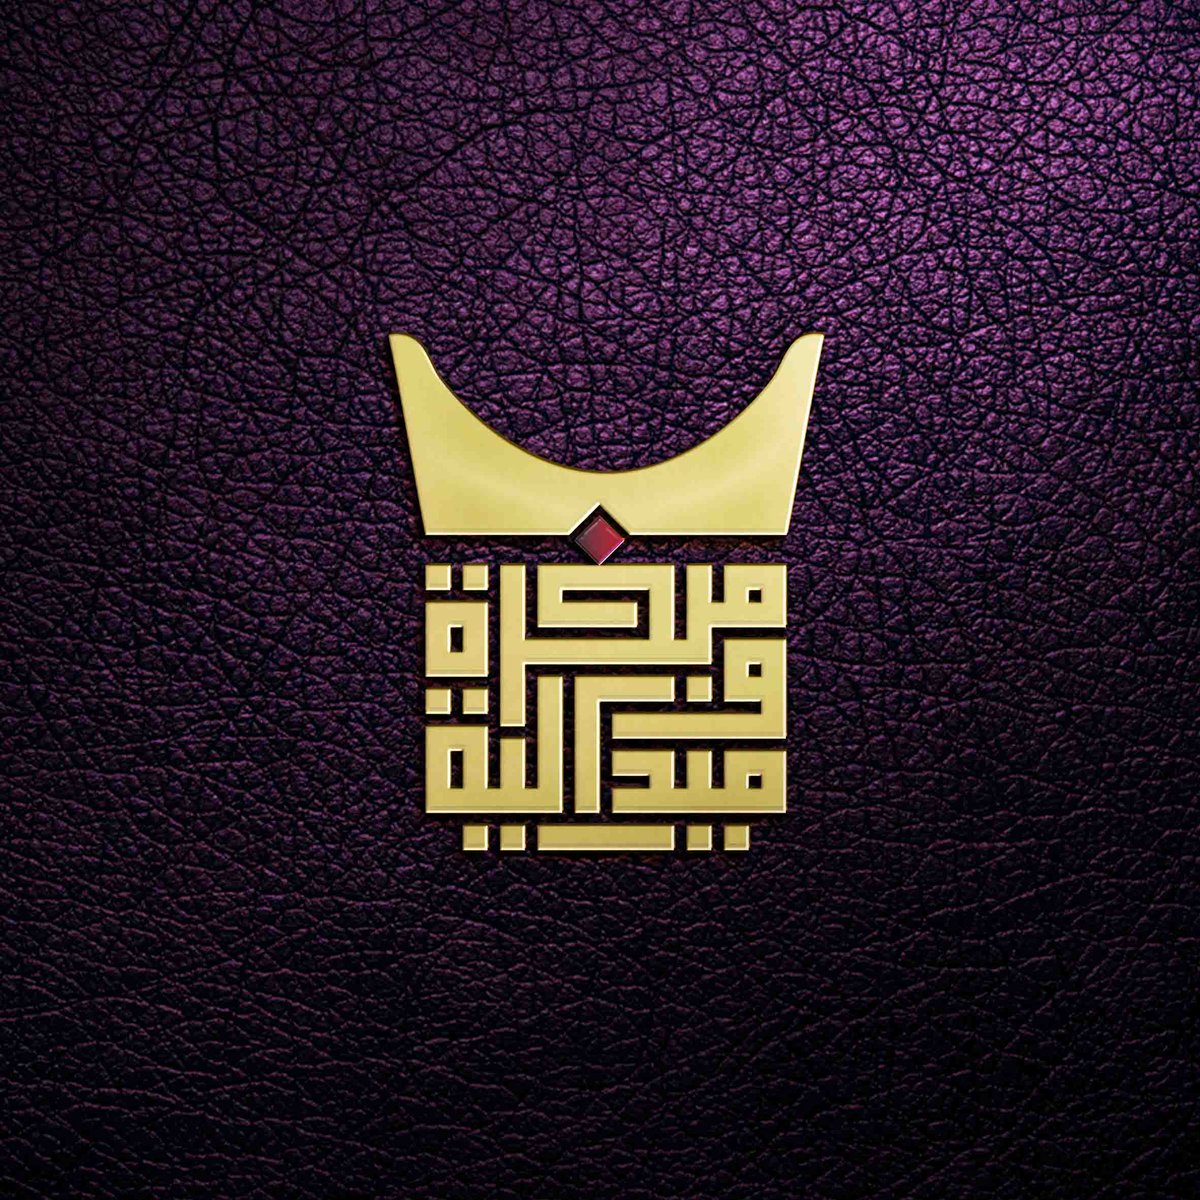 كوفي مربع on Twitter "شعار متجر مبخرة وميدالية . من اعمالي بالخط